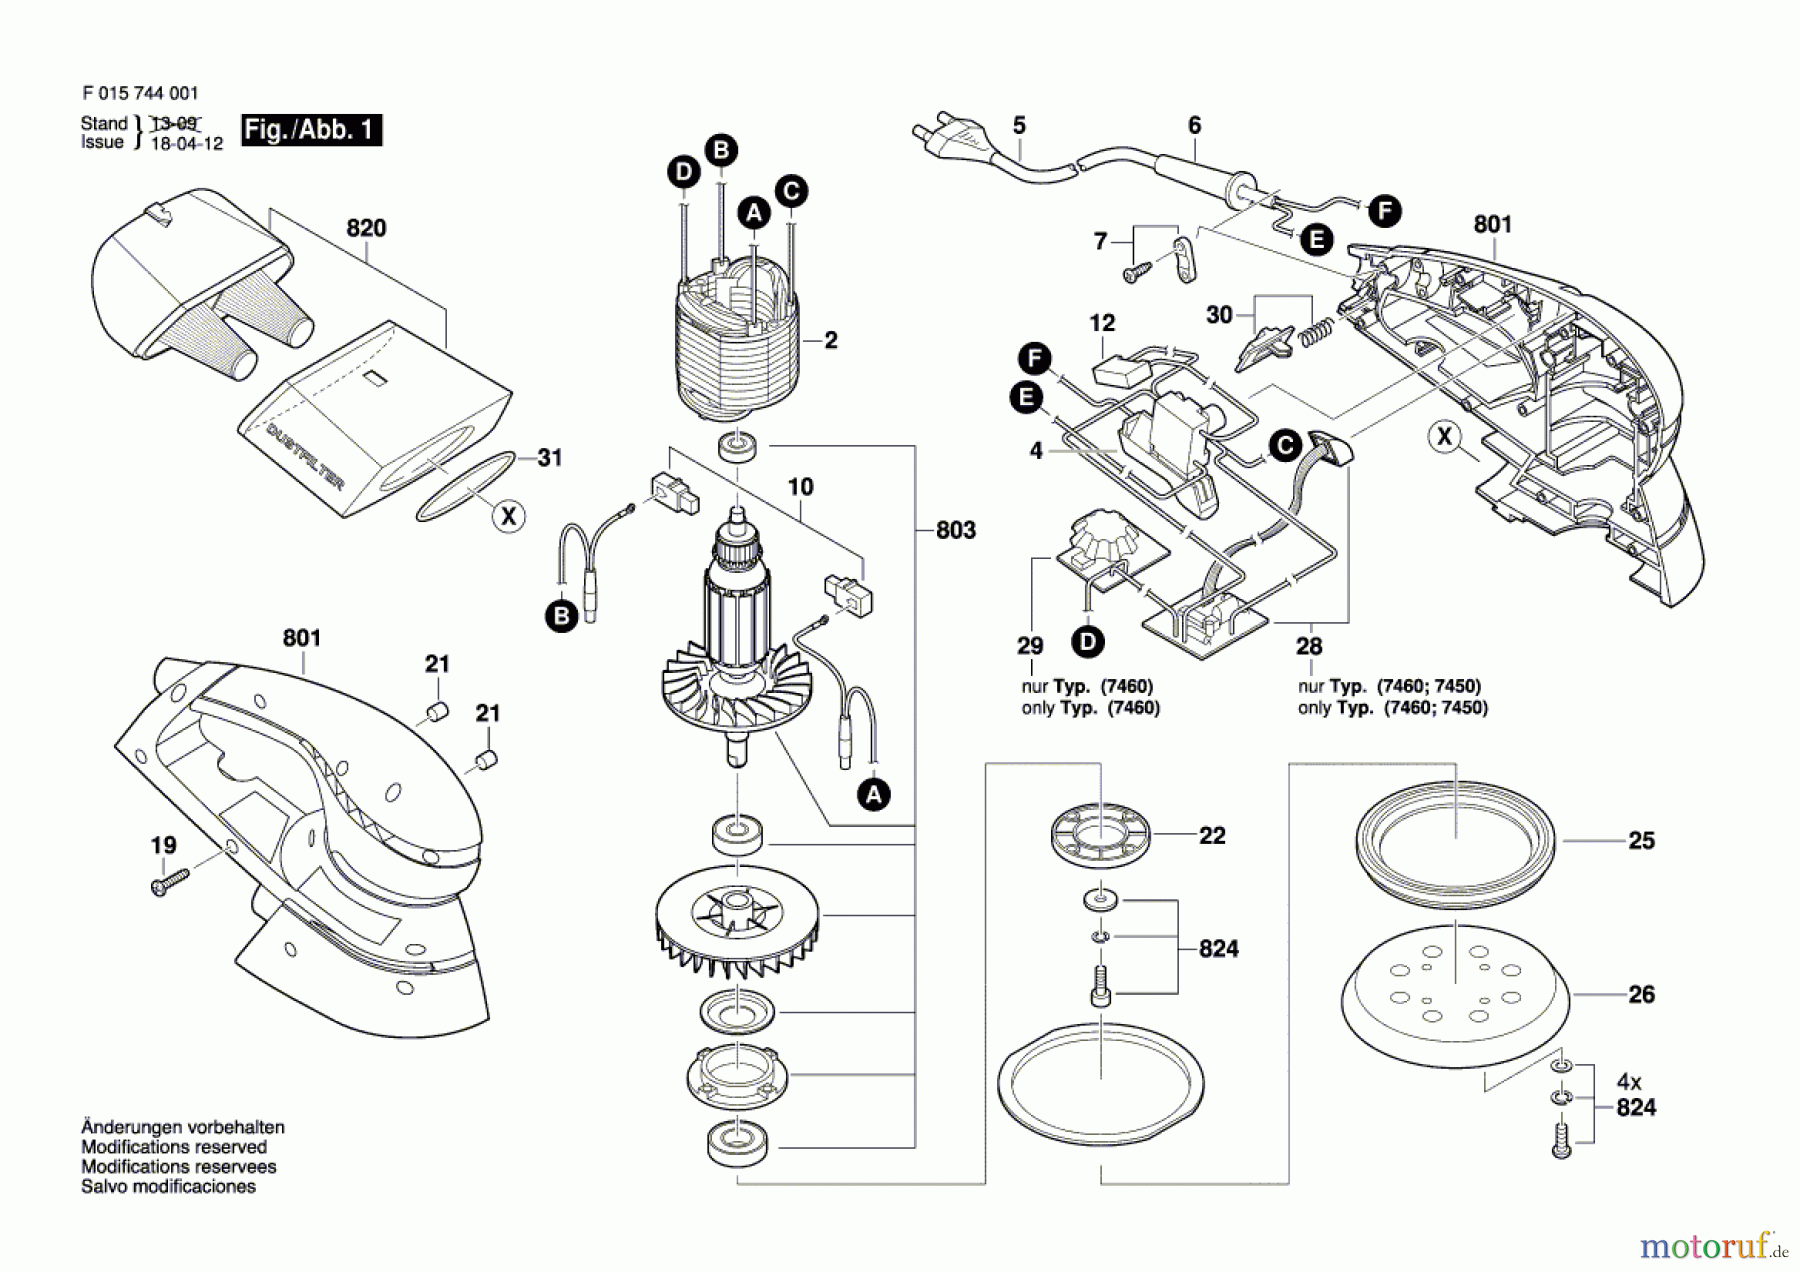  Bosch Werkzeug Exzenterschleifer 7460 Seite 1